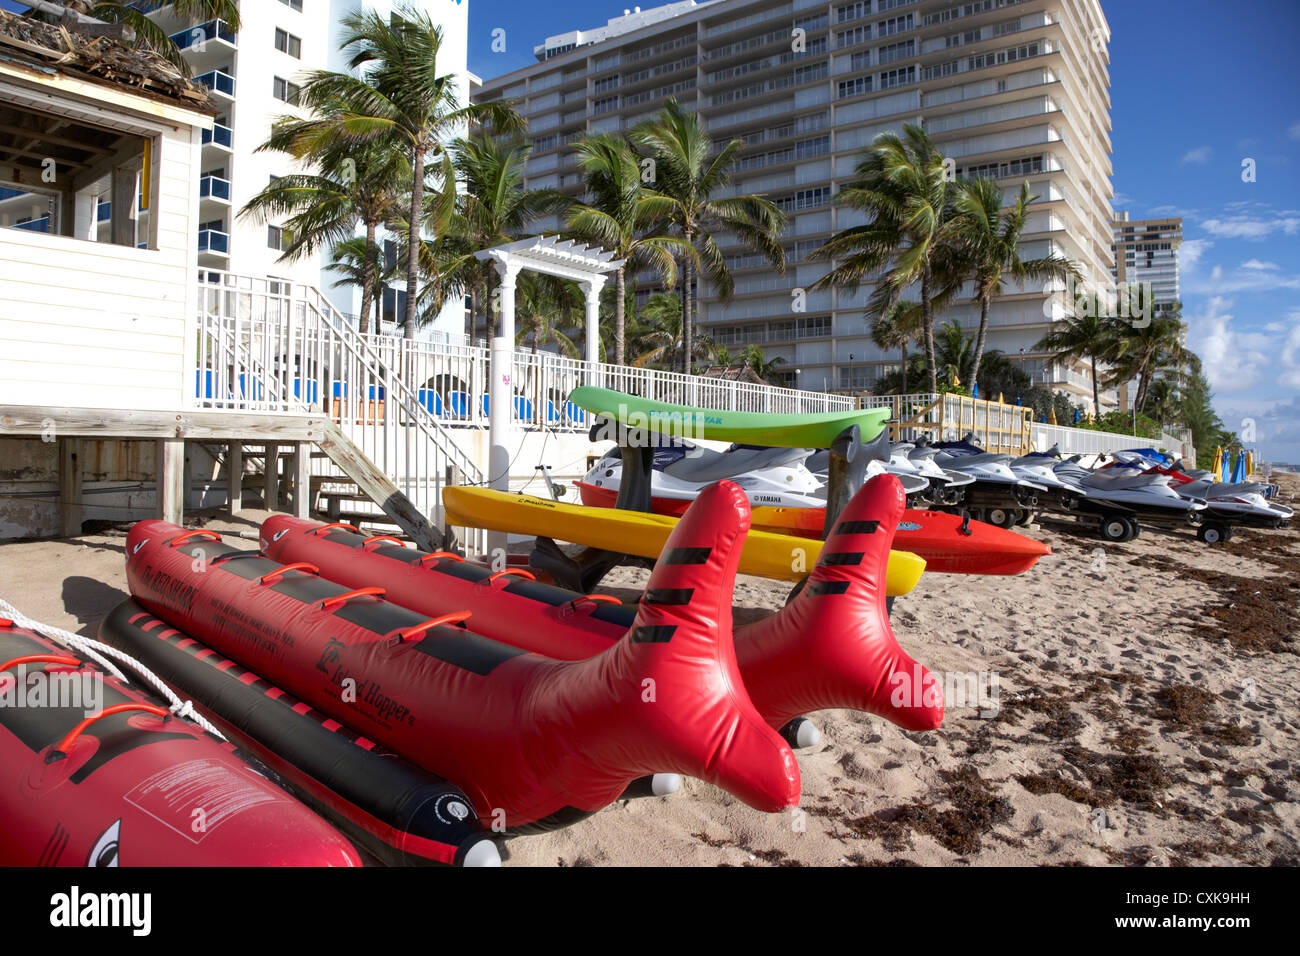 Sport acquatici attrezzature a noleggio di fronte agli appartamenti alberghi e gli sviluppi sul fronte spiaggia spiaggia di Fort Lauderdale Florida usa Foto Stock